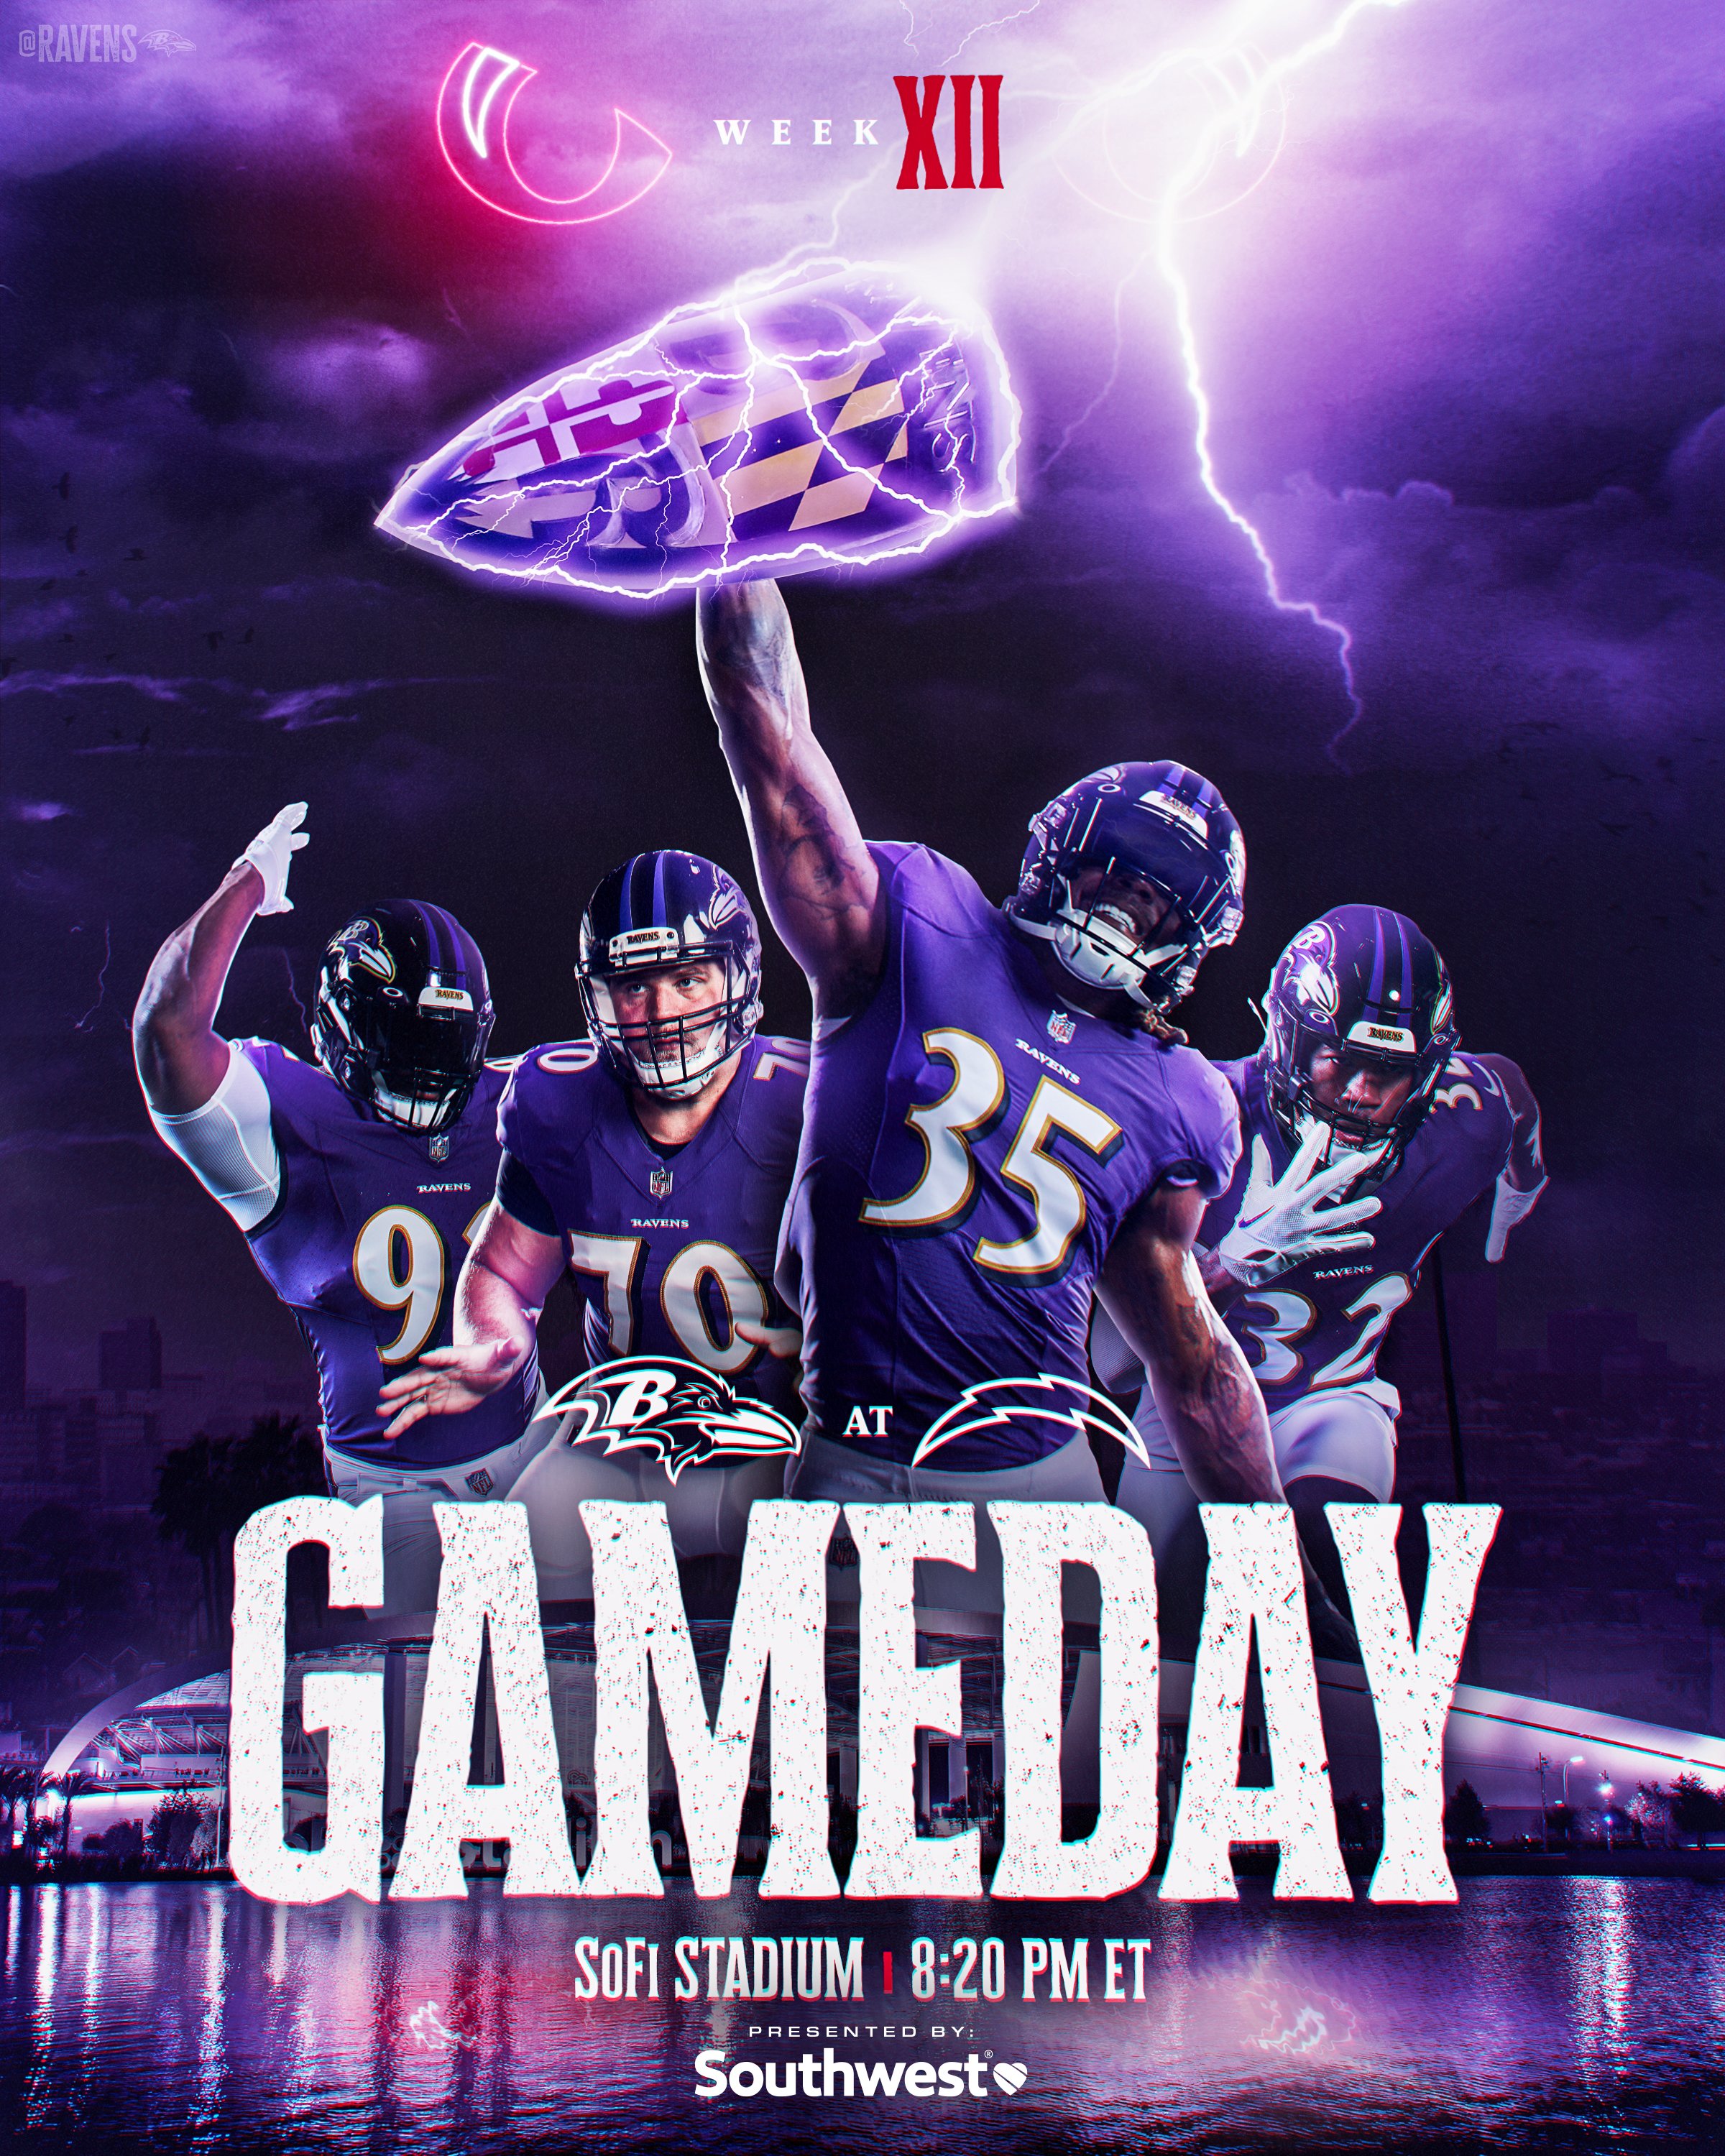 Ready for Primetime 😍 - Baltimore Ravens